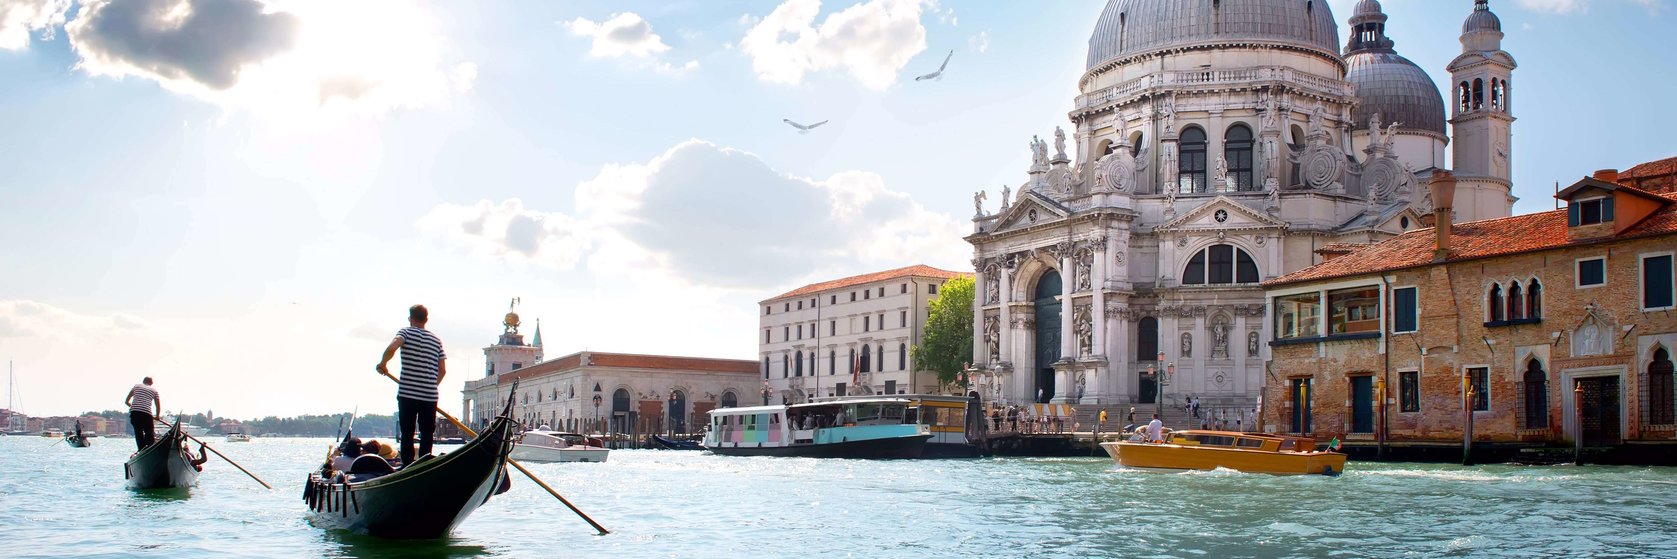 Místa v Benátkách, které musíte navštívit